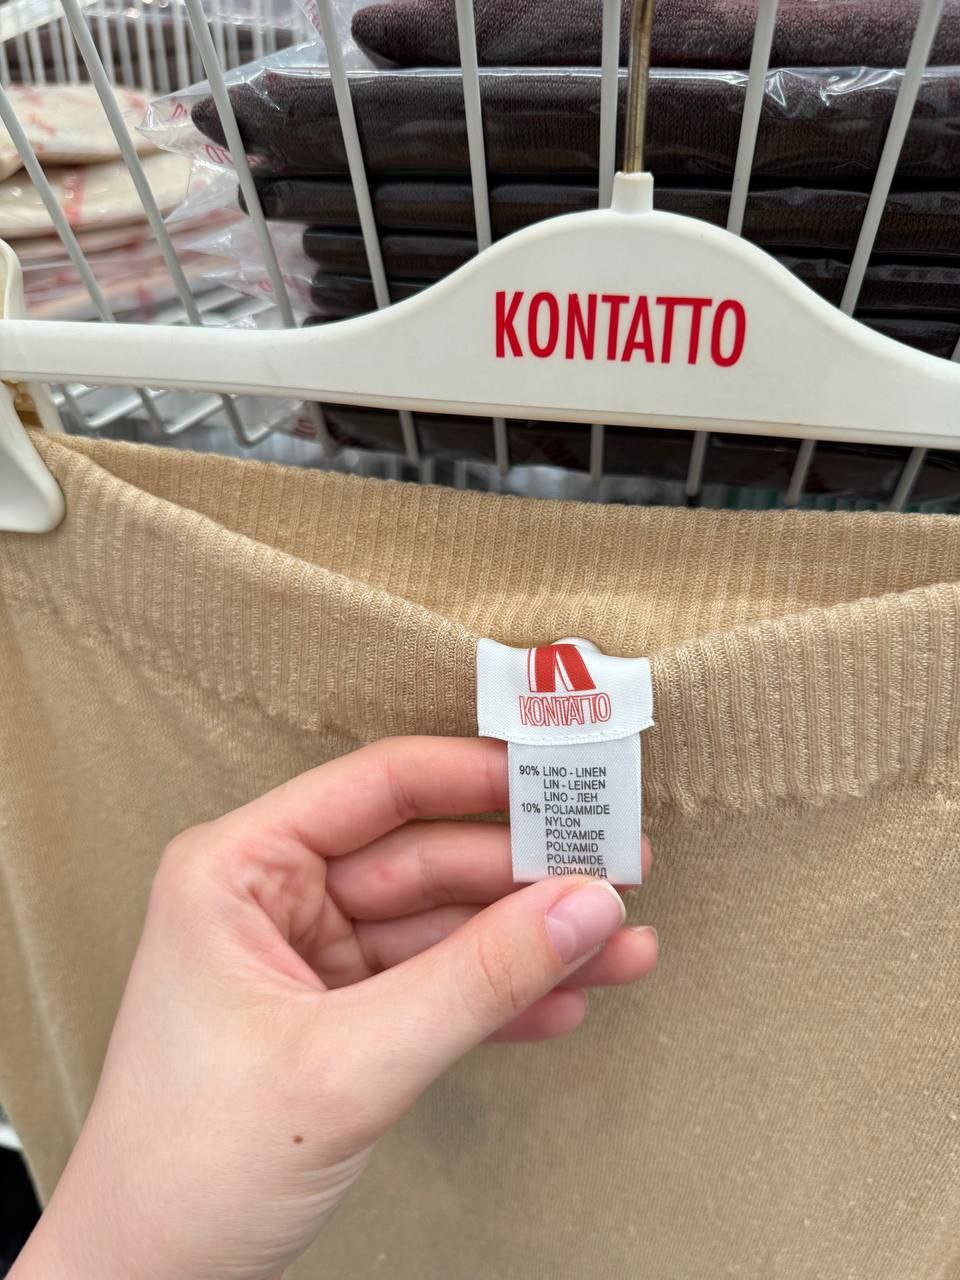 Итальянская одежда, бренд Kontatto, арт. 73314599